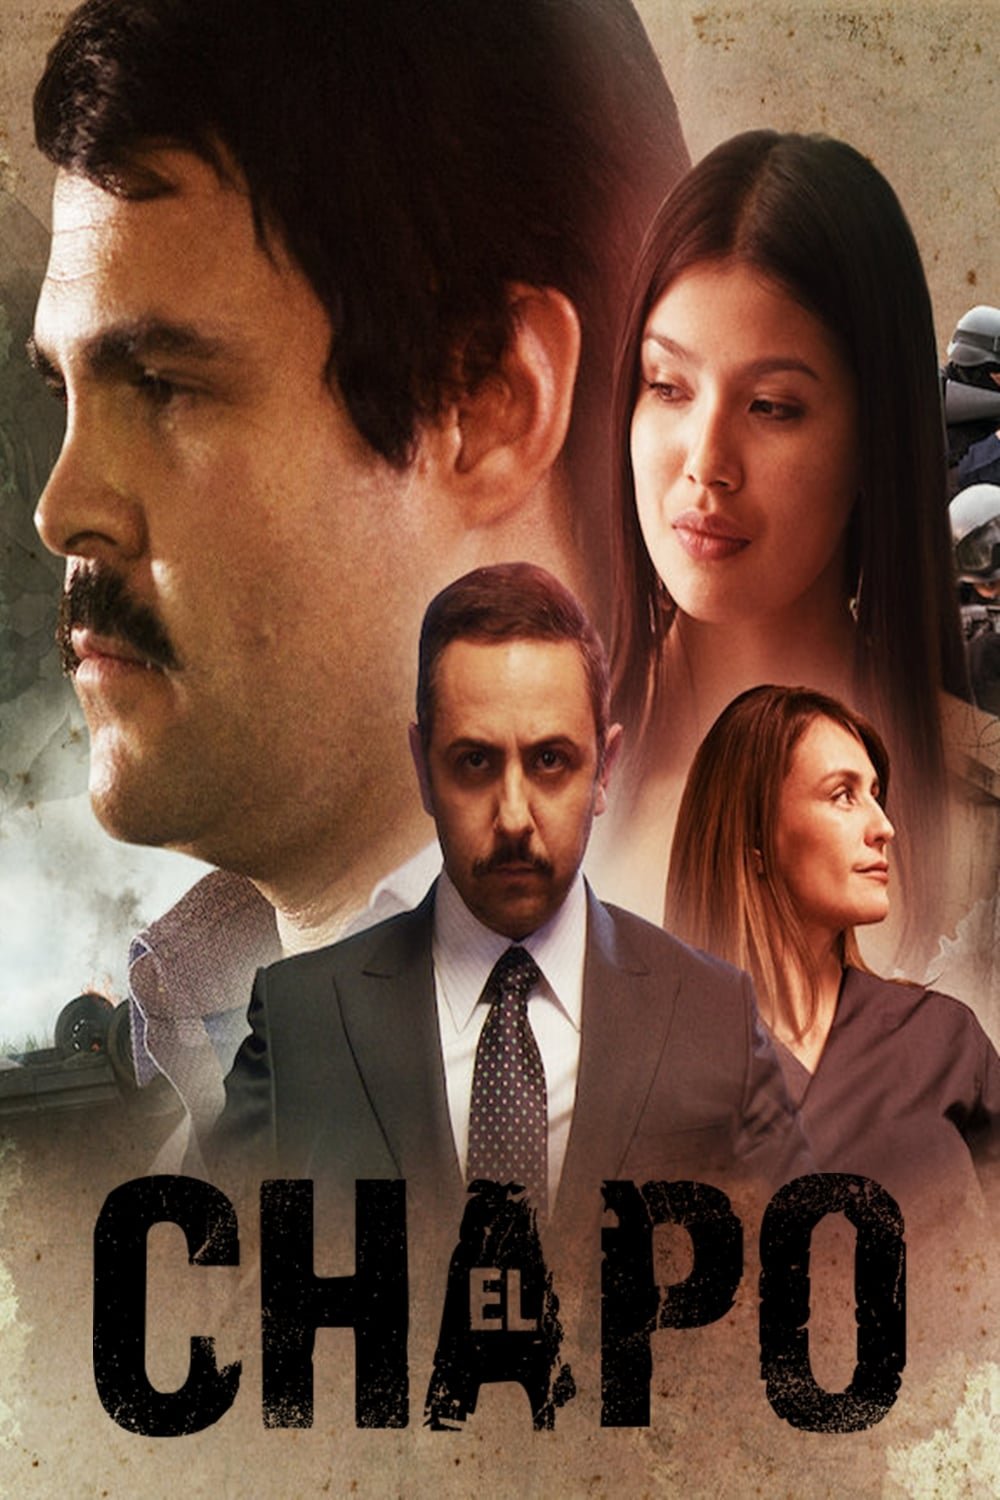 Juan Pablo Gamboa movie posters